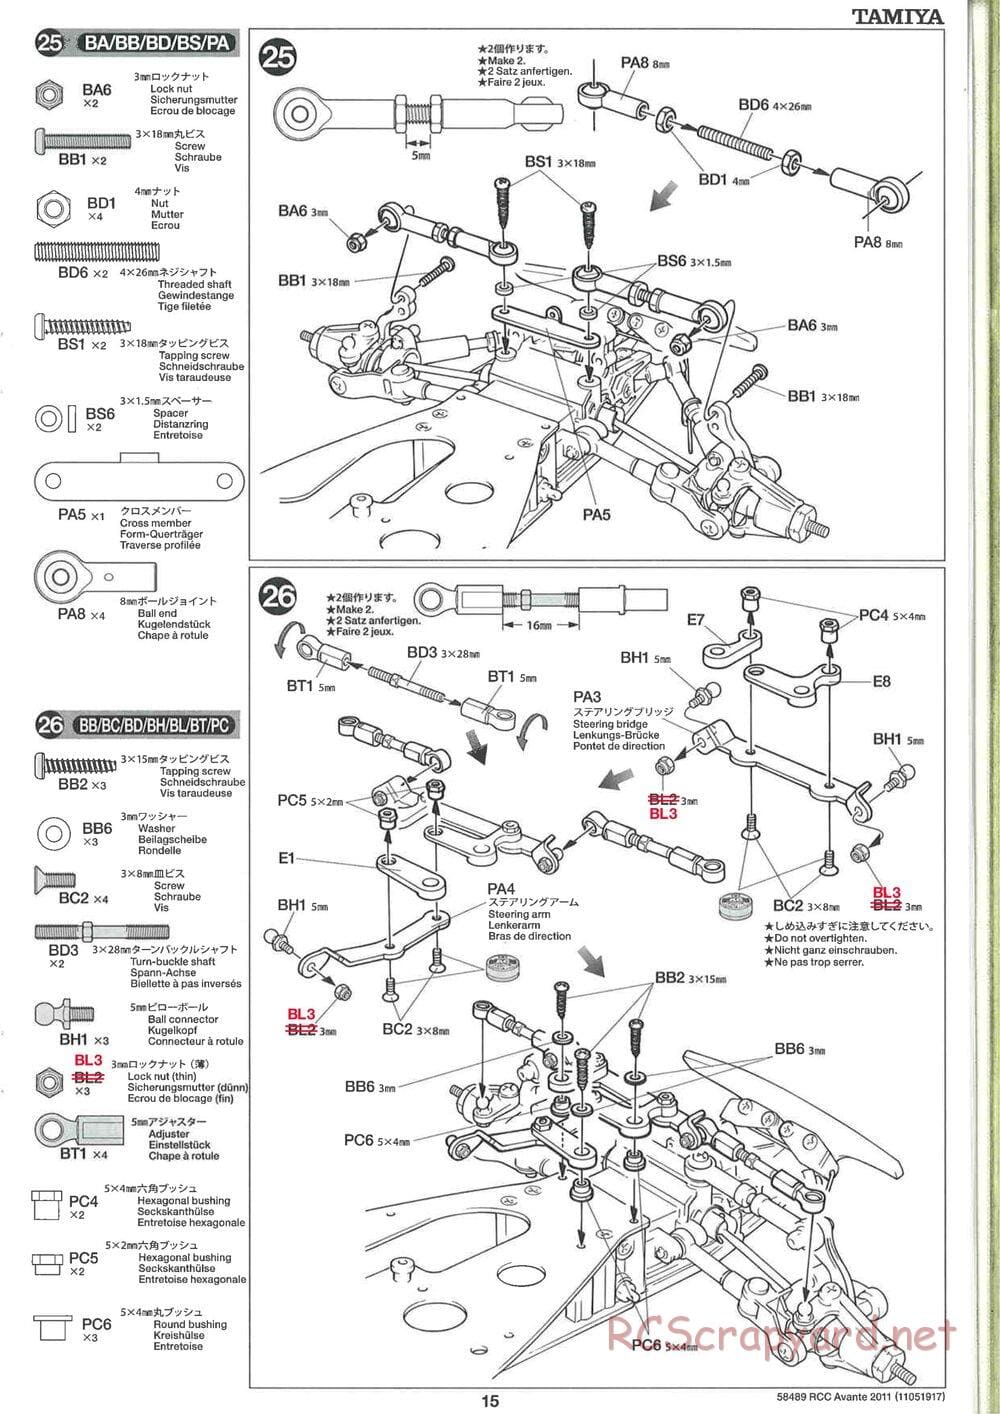 Tamiya - Avante 2011 - AV Chassis - Manual - Page 15